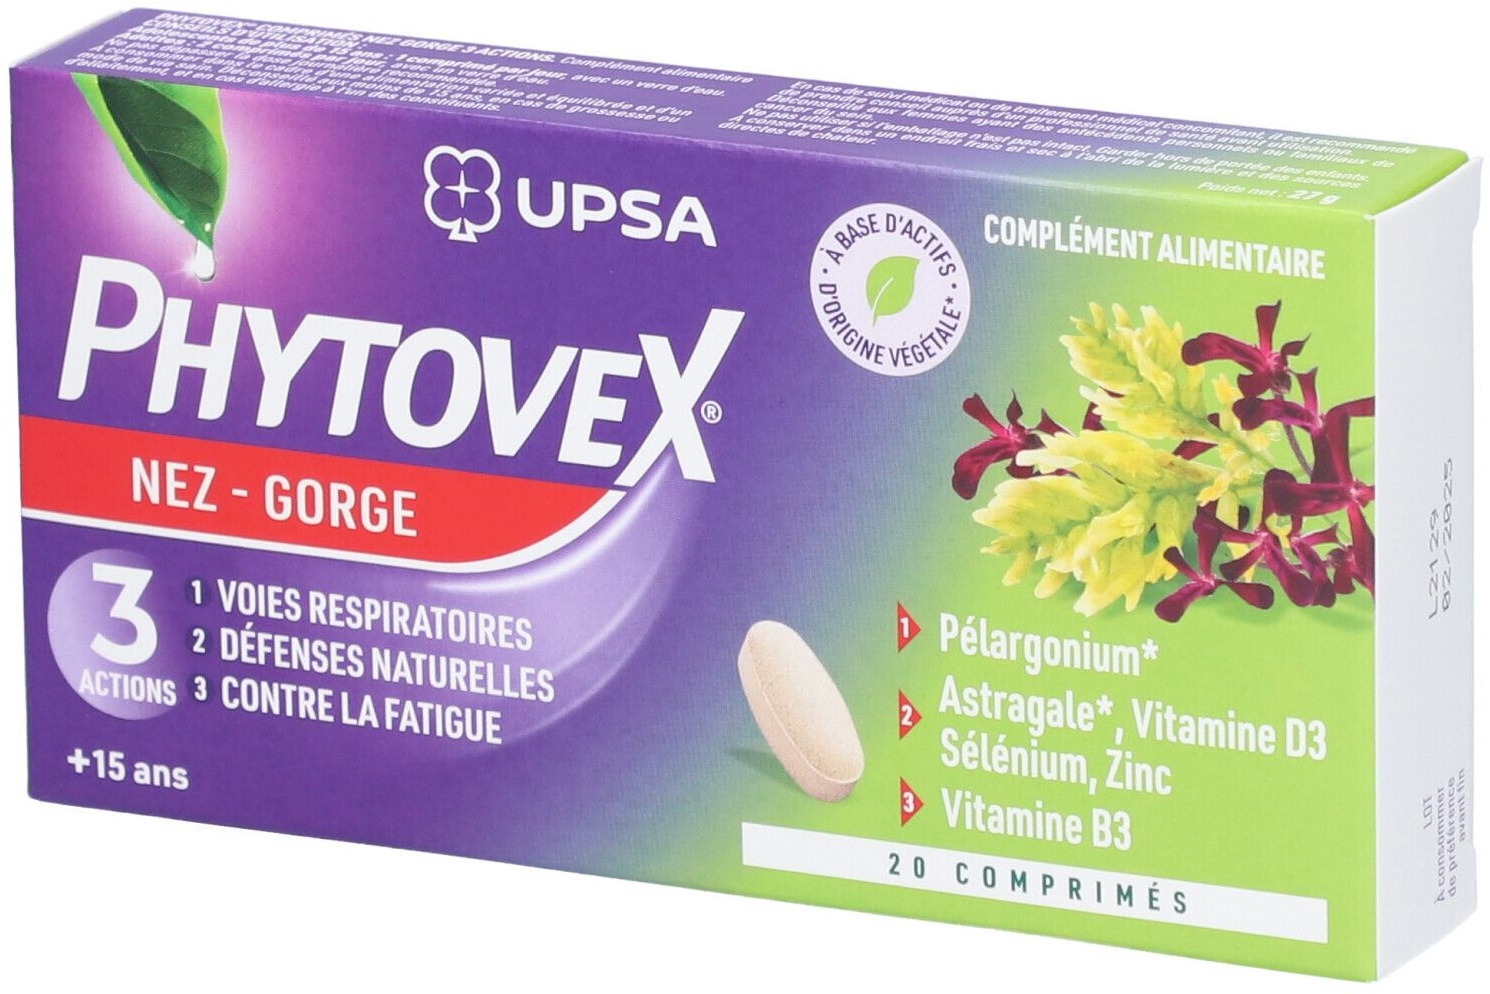 Phytovex Nez-Gorge 3 Actions UPSA, 20 comprimés - Adulte & Ado dès 15ans - Complément alimentaire Sans Gluten, ni Lactose - Gorge & Voies Respiratoires 20 pc(s) comprimé(s)